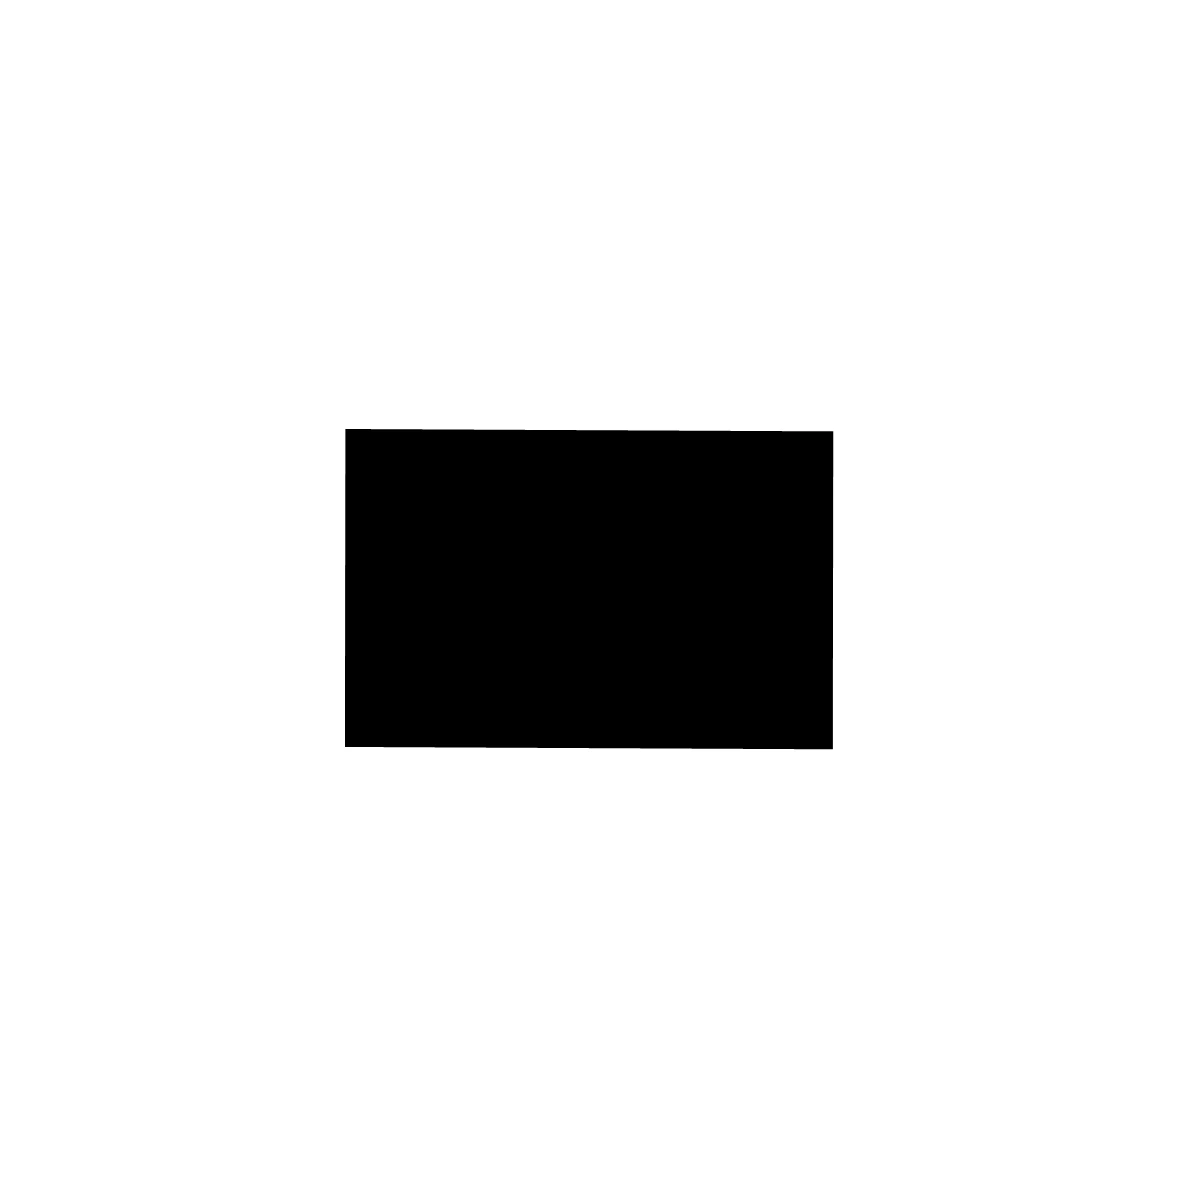 Moosgummidichtung vierkant | 6 mm Breite | Farbe: schwarz